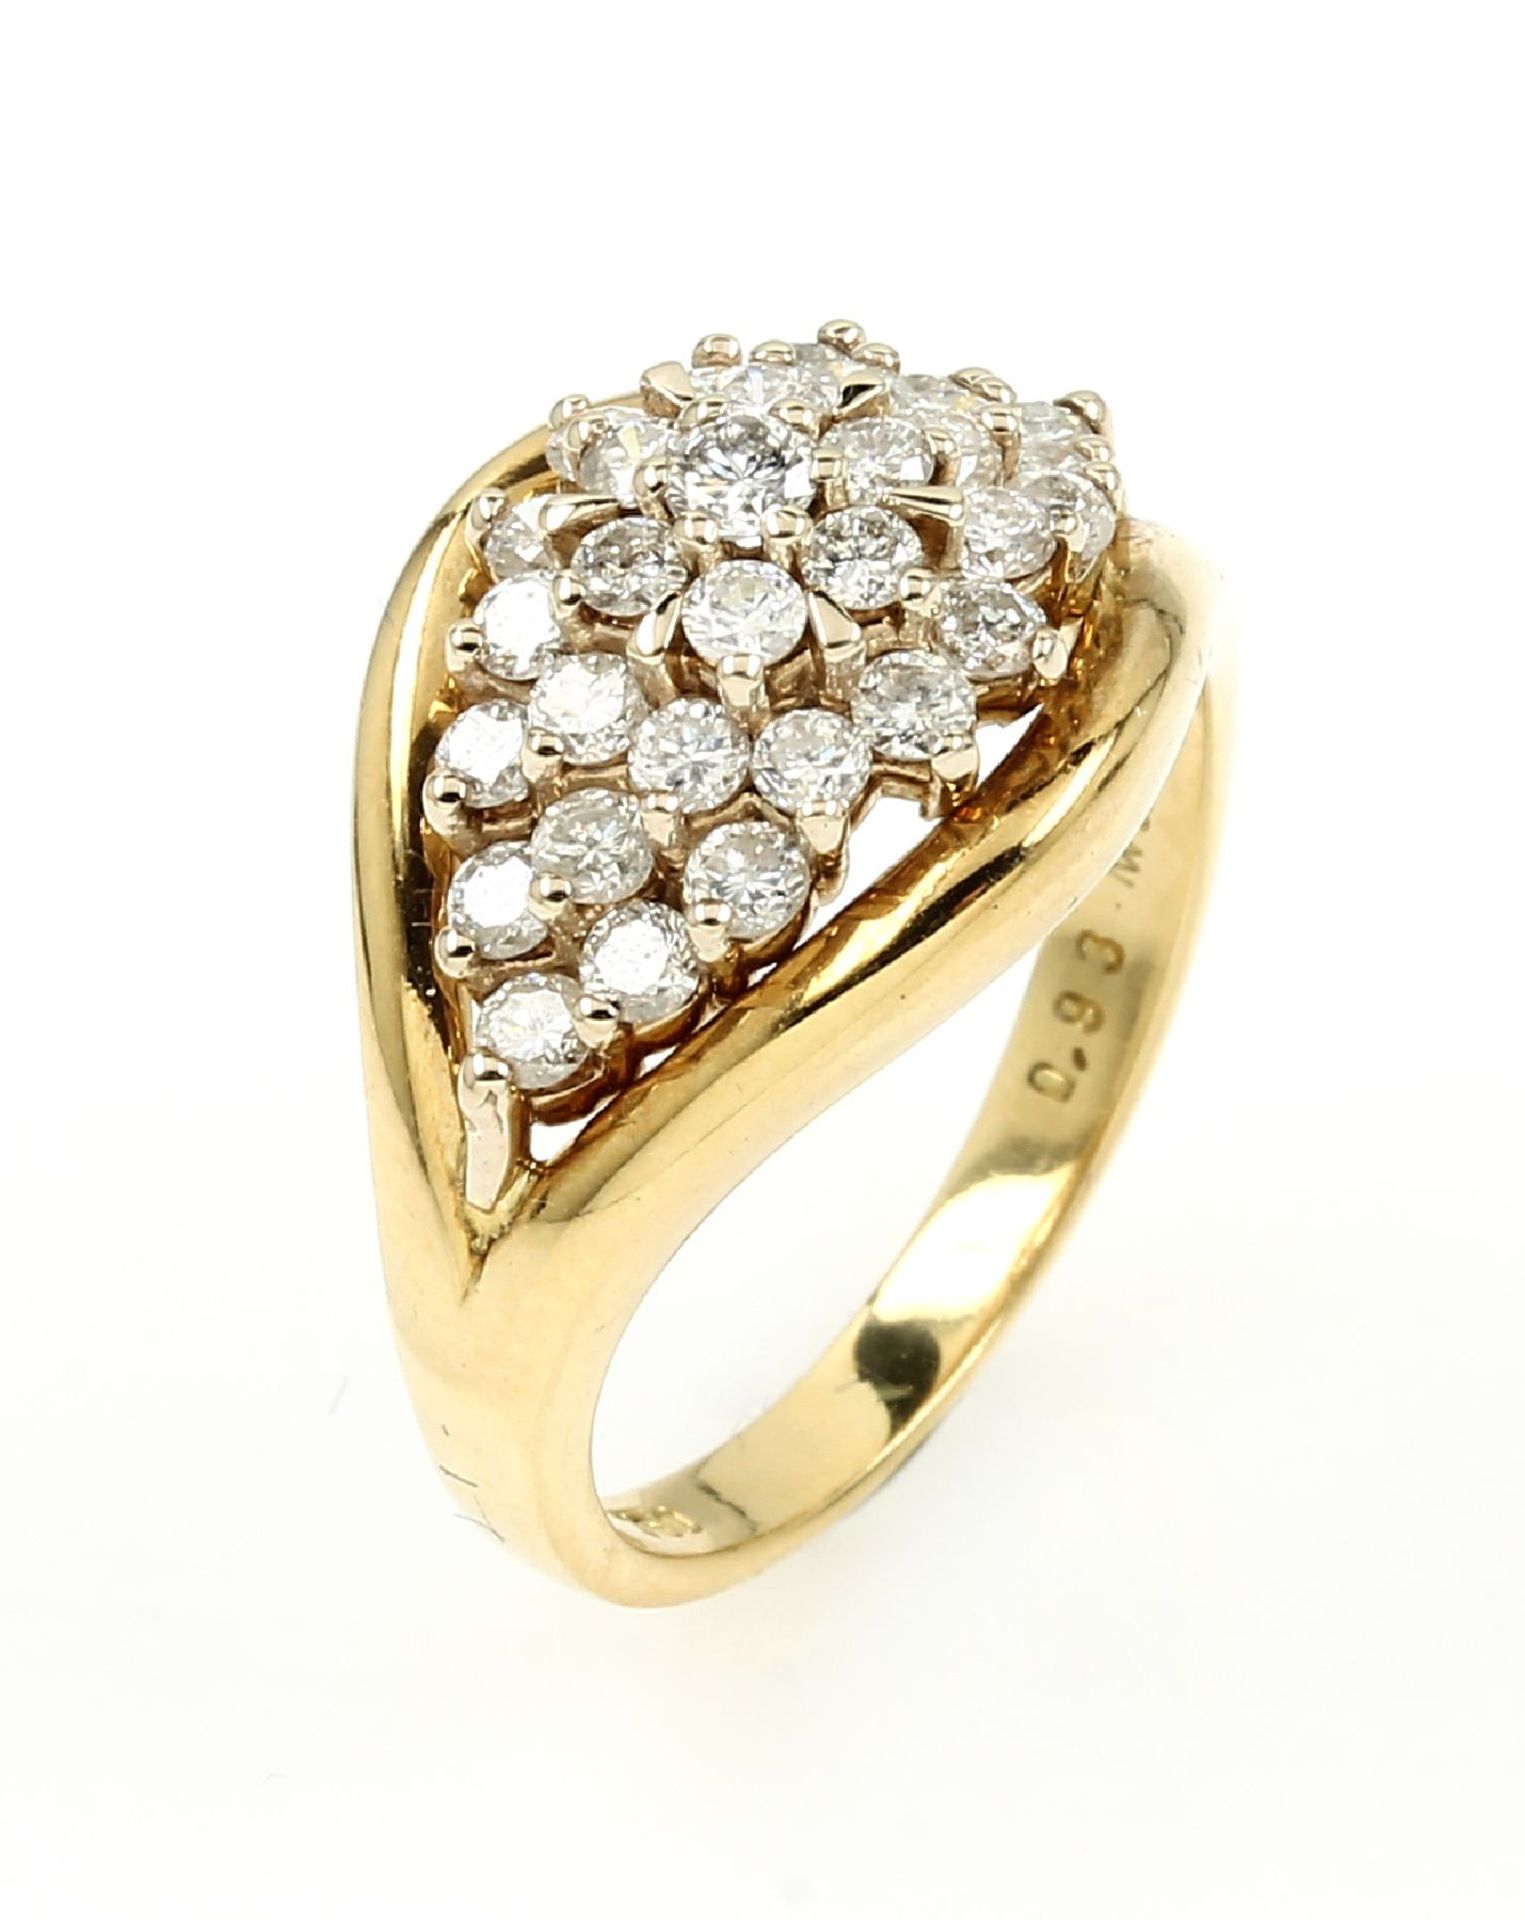 18 kt Gold Ring mit Brillanten,   GG 750/000,Brillanten